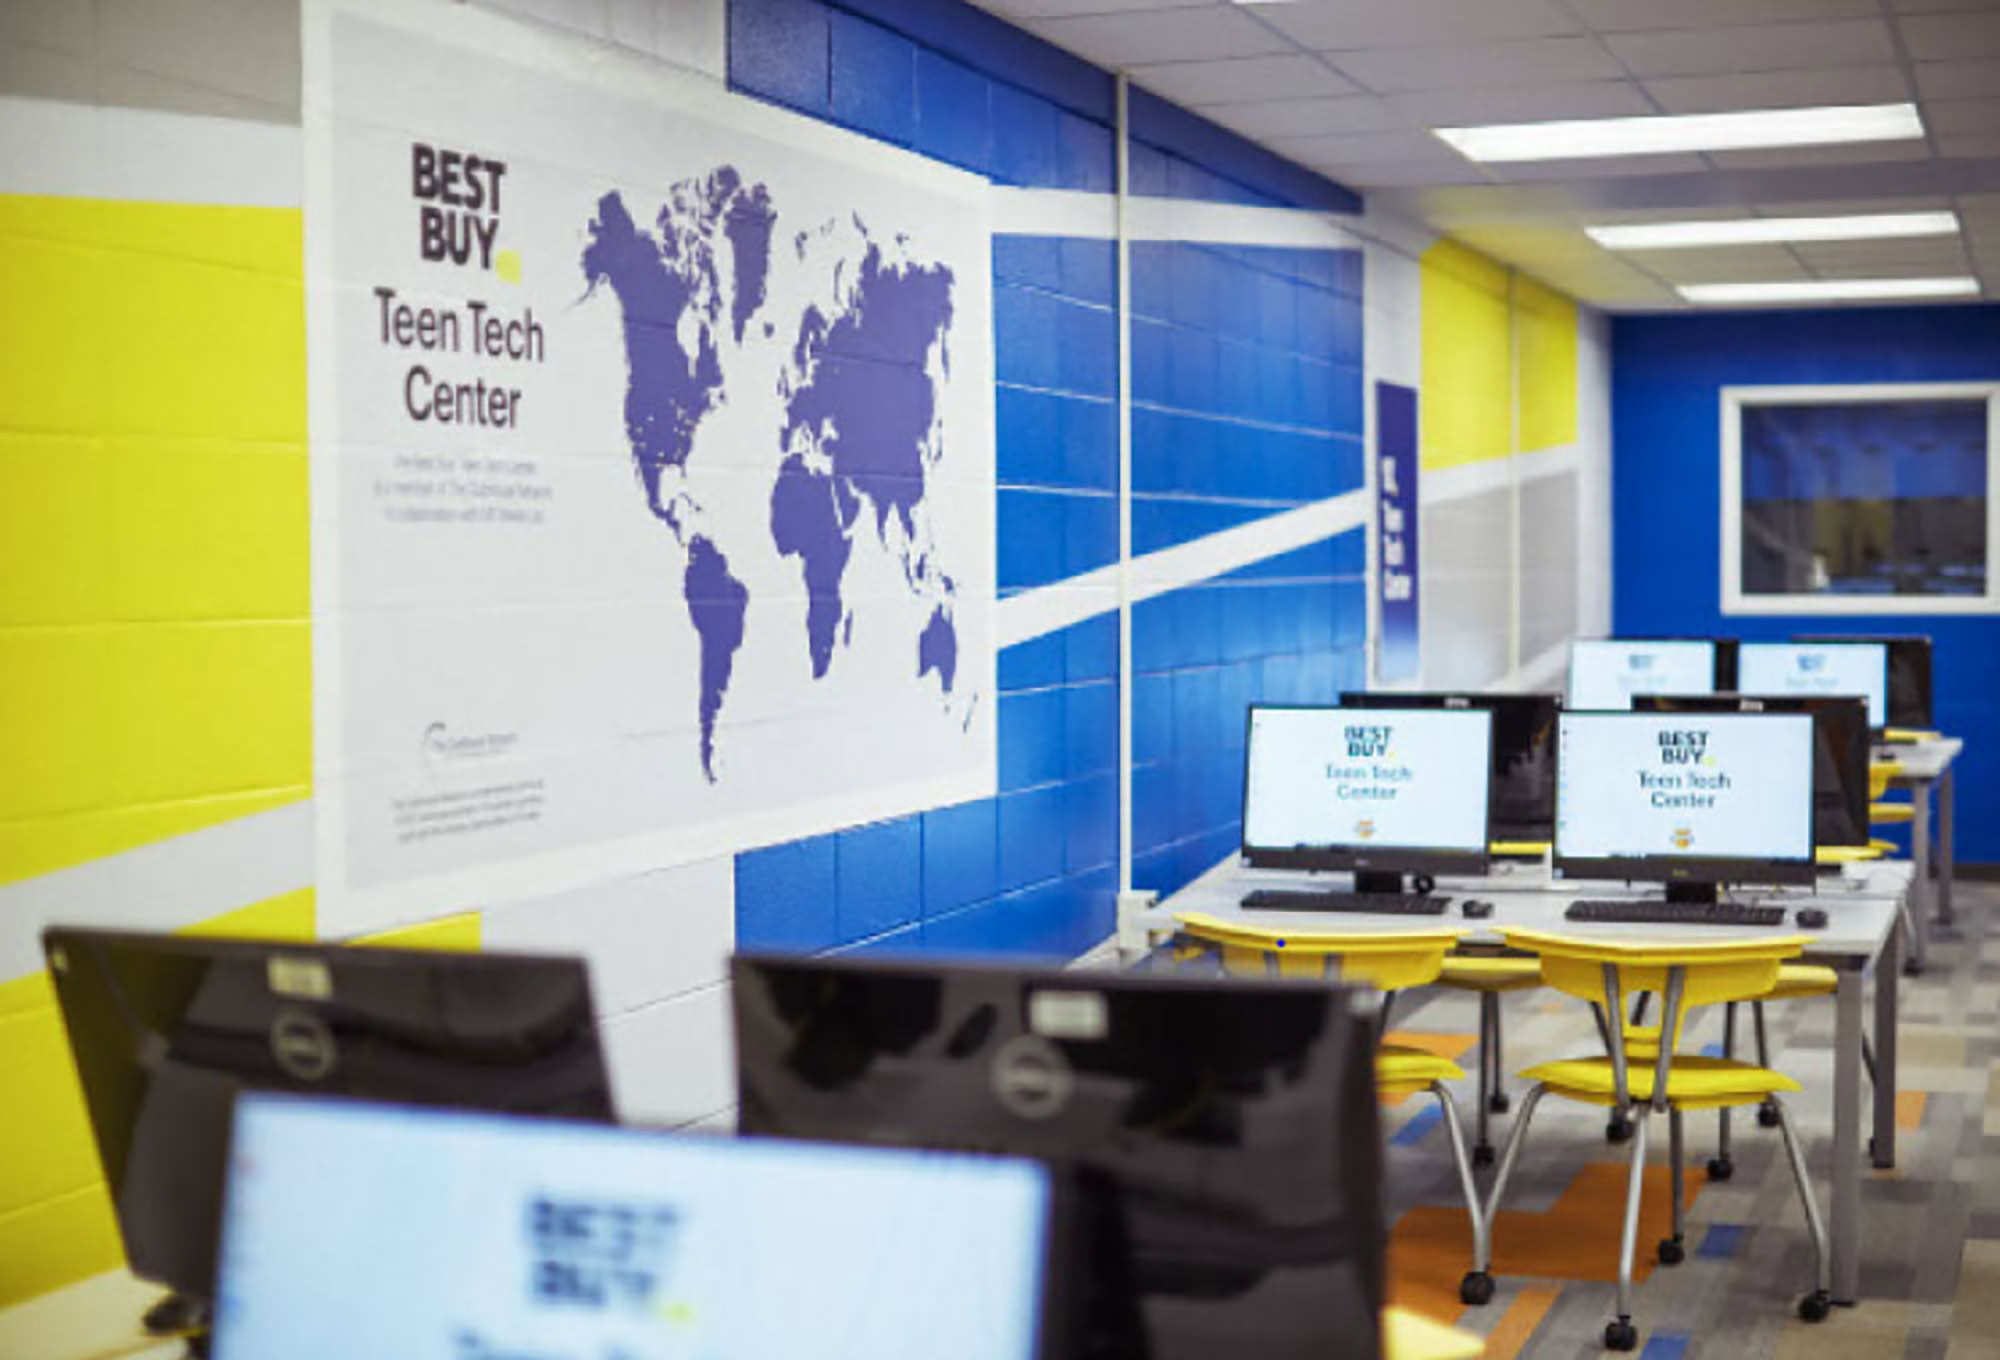 A photograph of a Best Buy Teen Tech Center